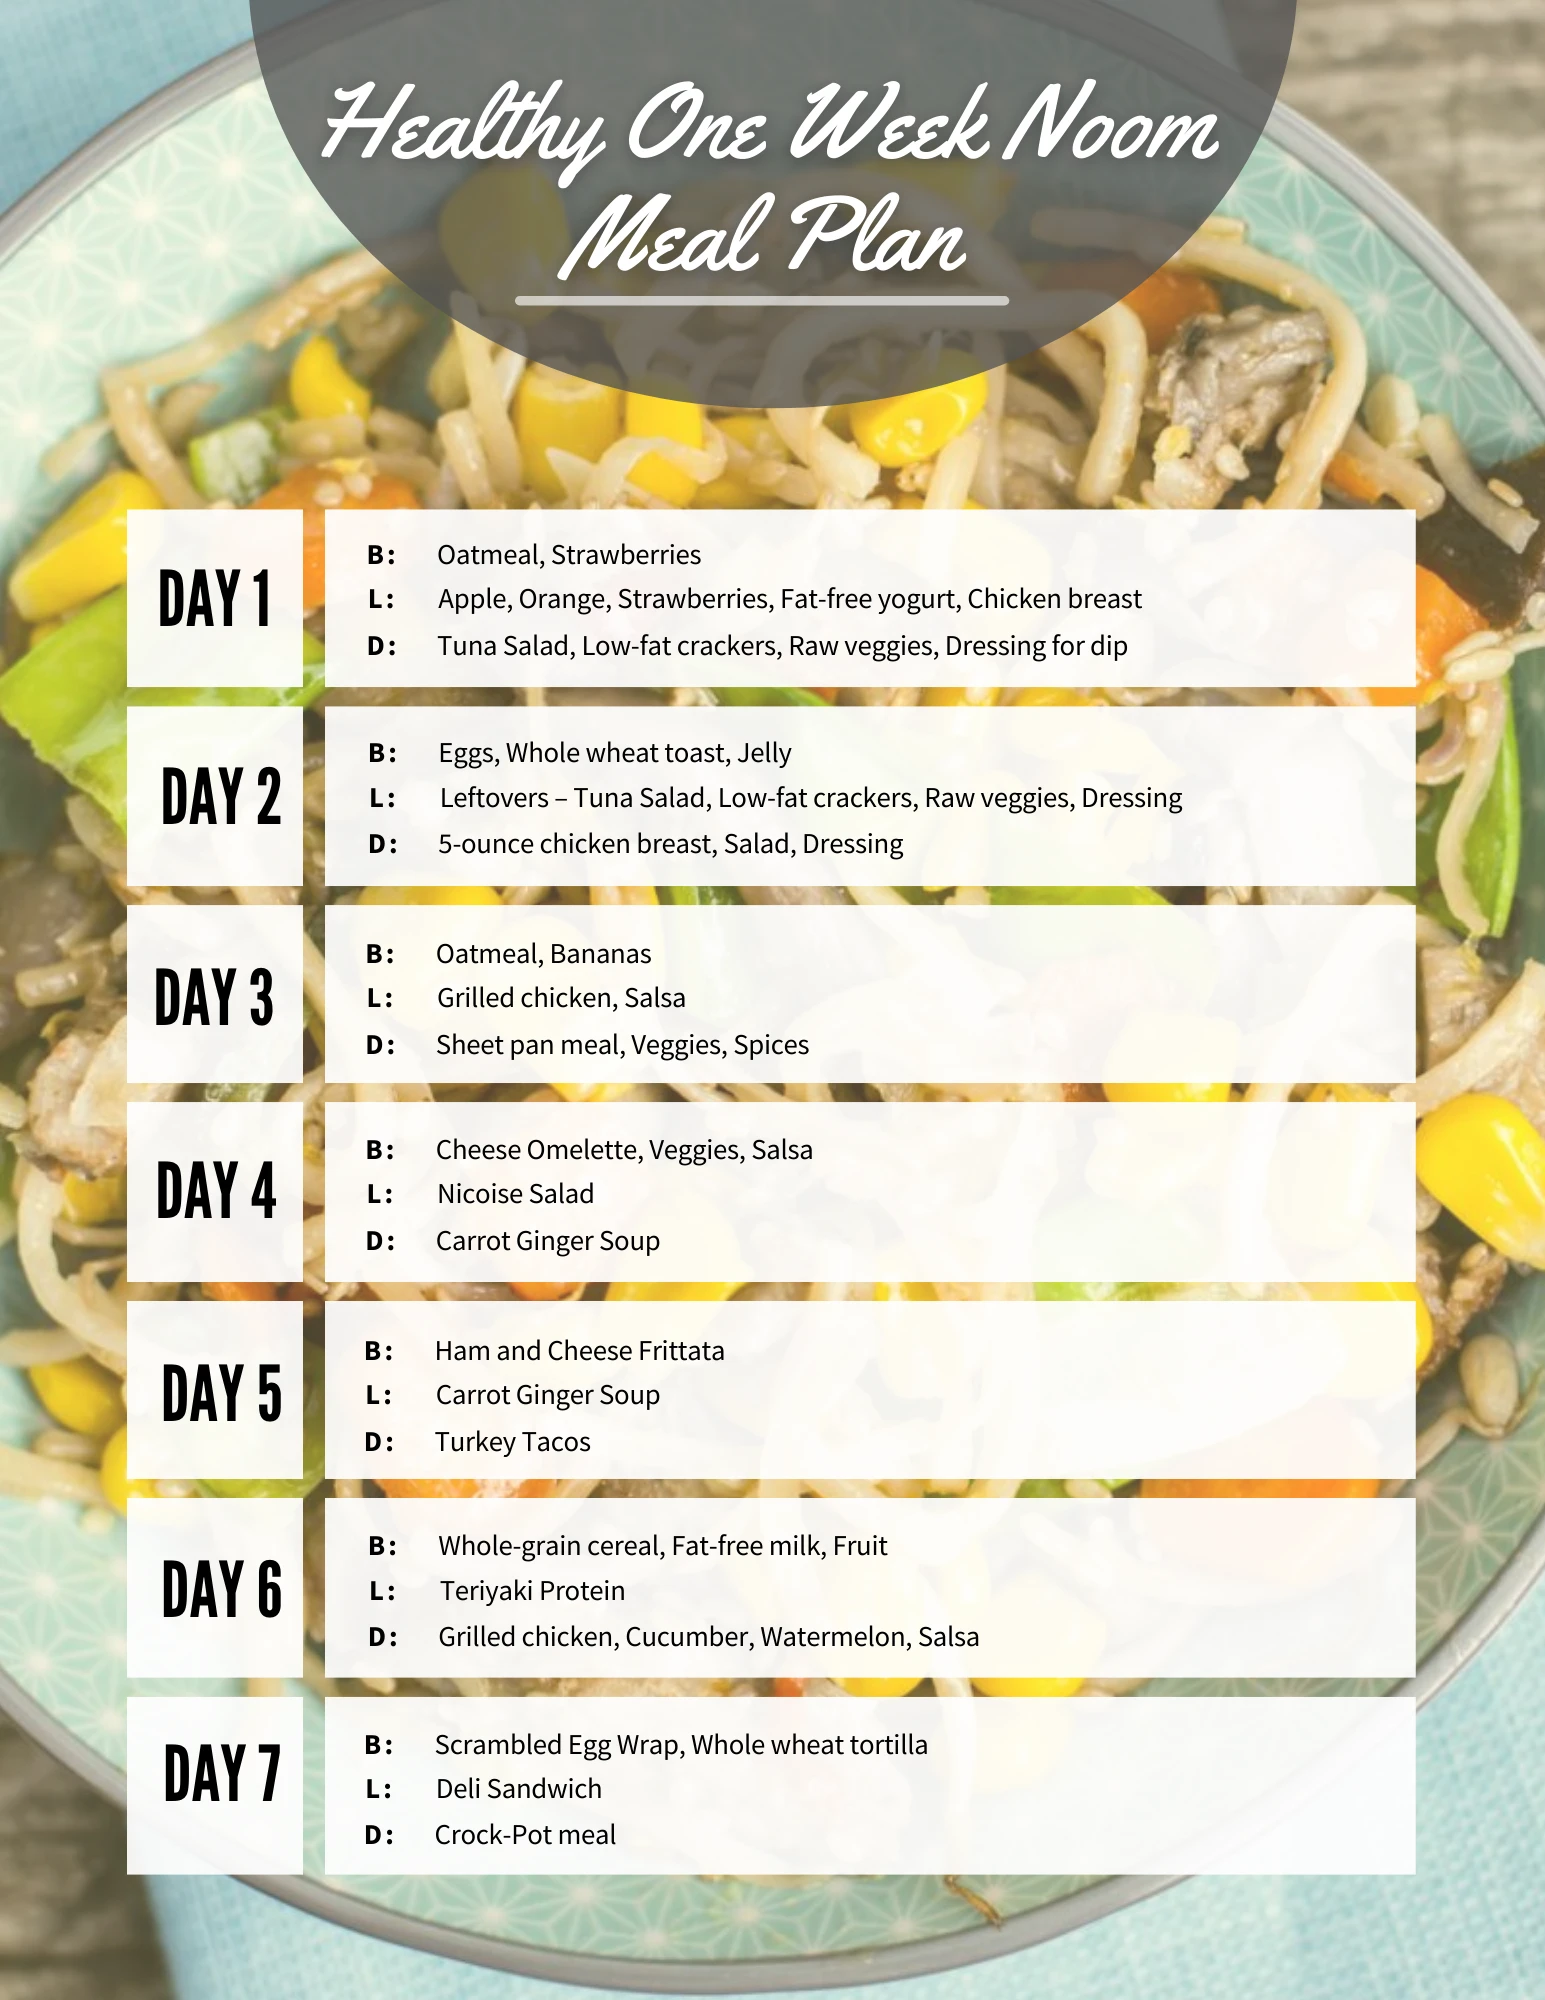 Healthy One Week Noom Meal Plan